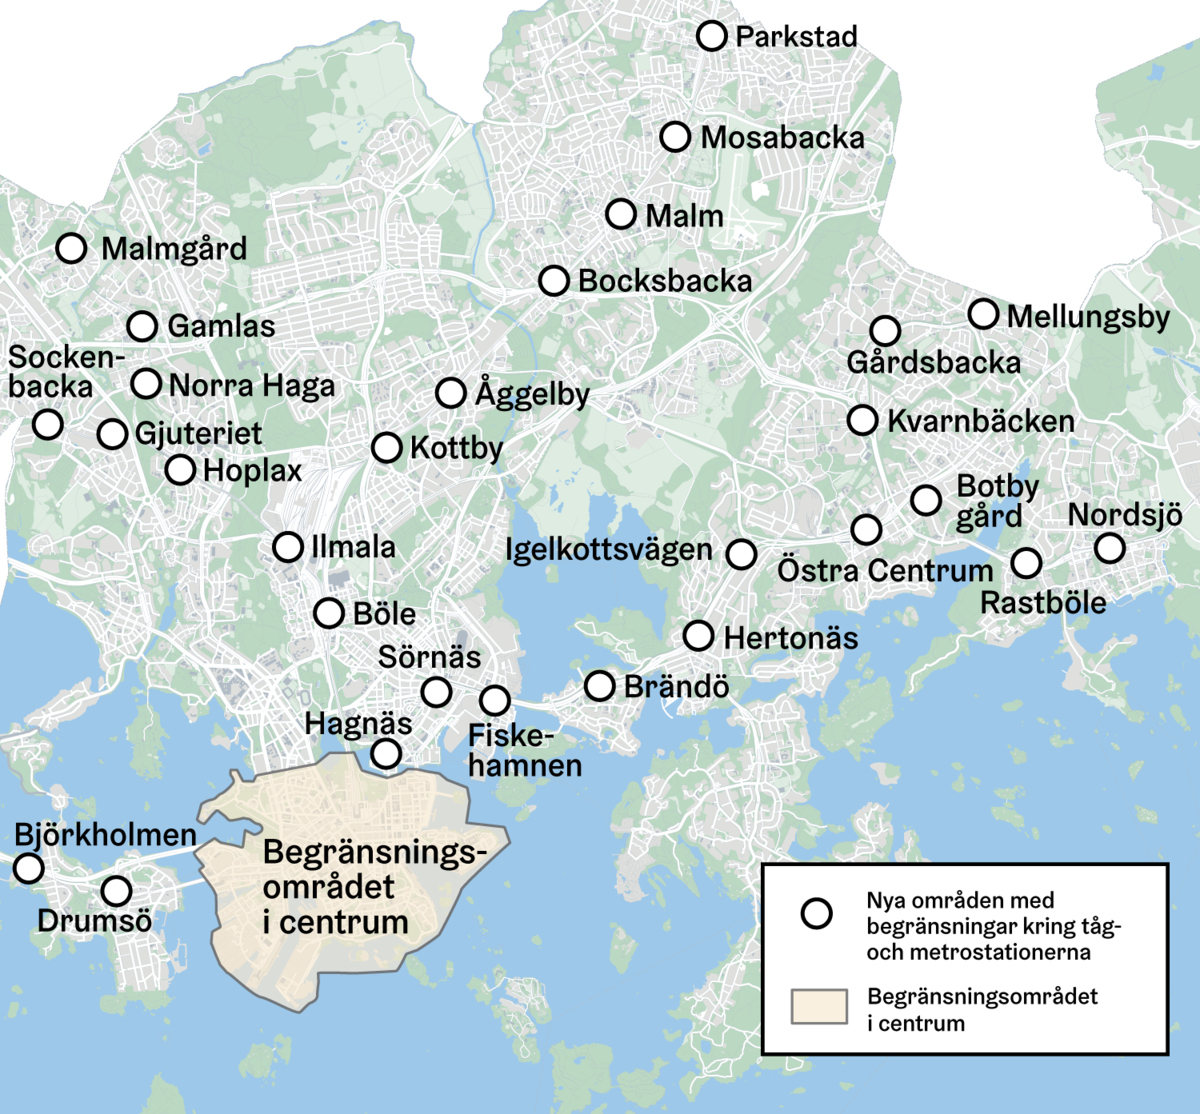 Karta som visar de nya områdena med begränsningar i Helsingfors. 